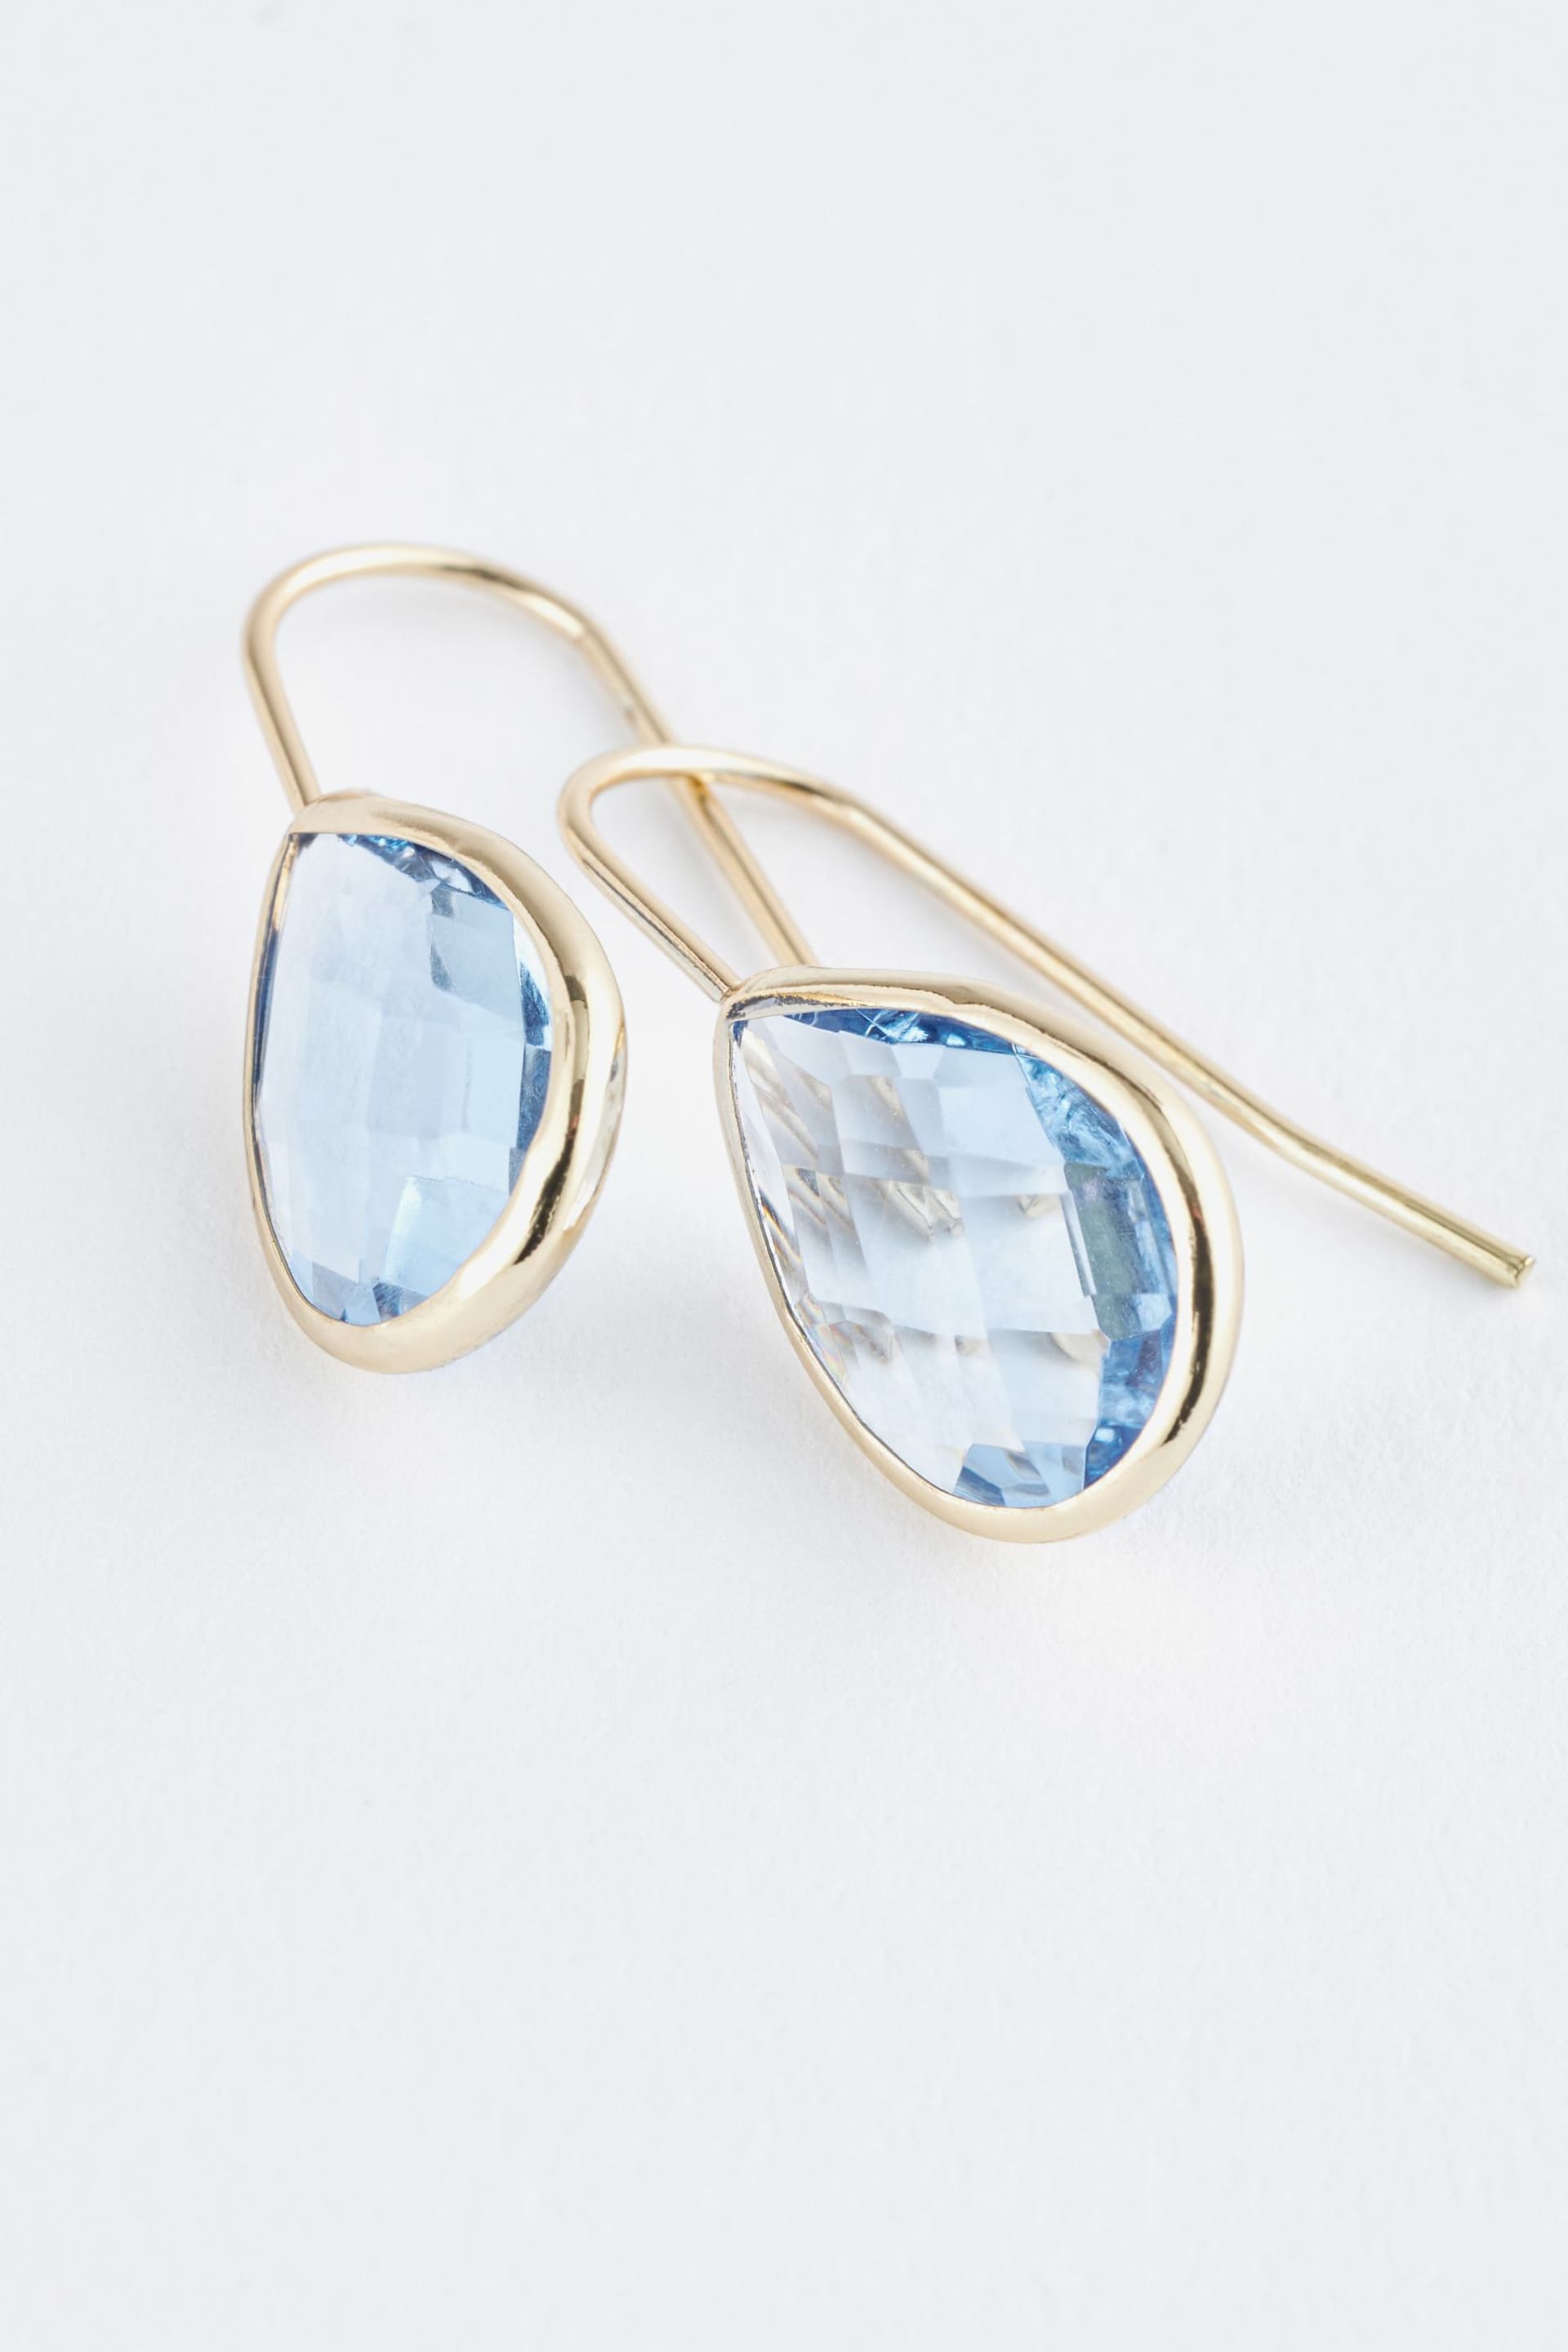 Gold Tone Teardrop Blue Stone Earrings - Image 4 of 4